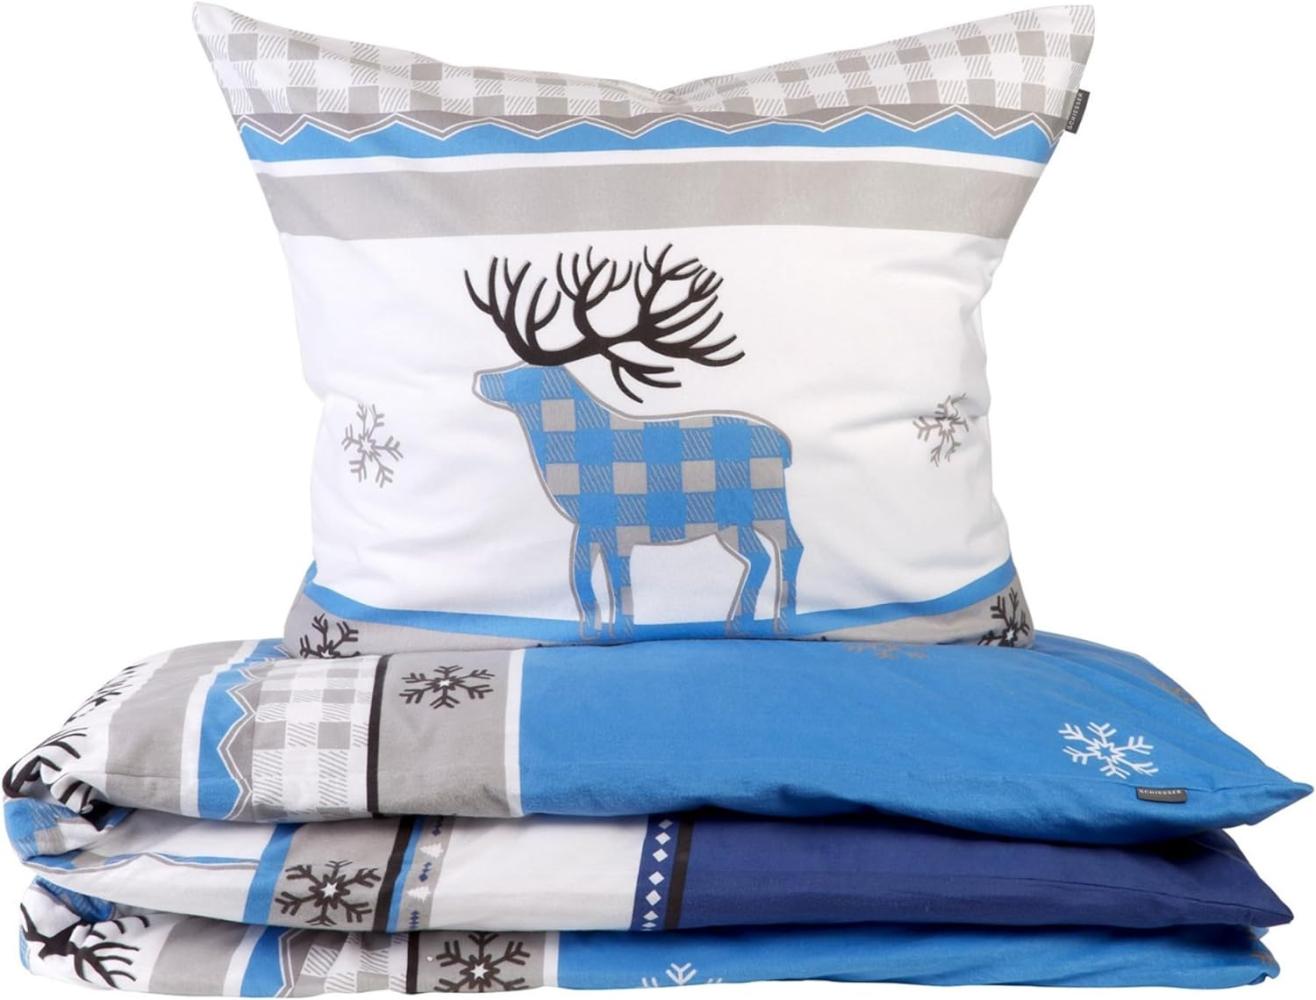 Schiesser Feinbiber Bettwäsche Set Verda aus weicher, wärmender Baumwolle, Farbe:Blau und Grau, Größe:155 cm x 220 cm Bild 1